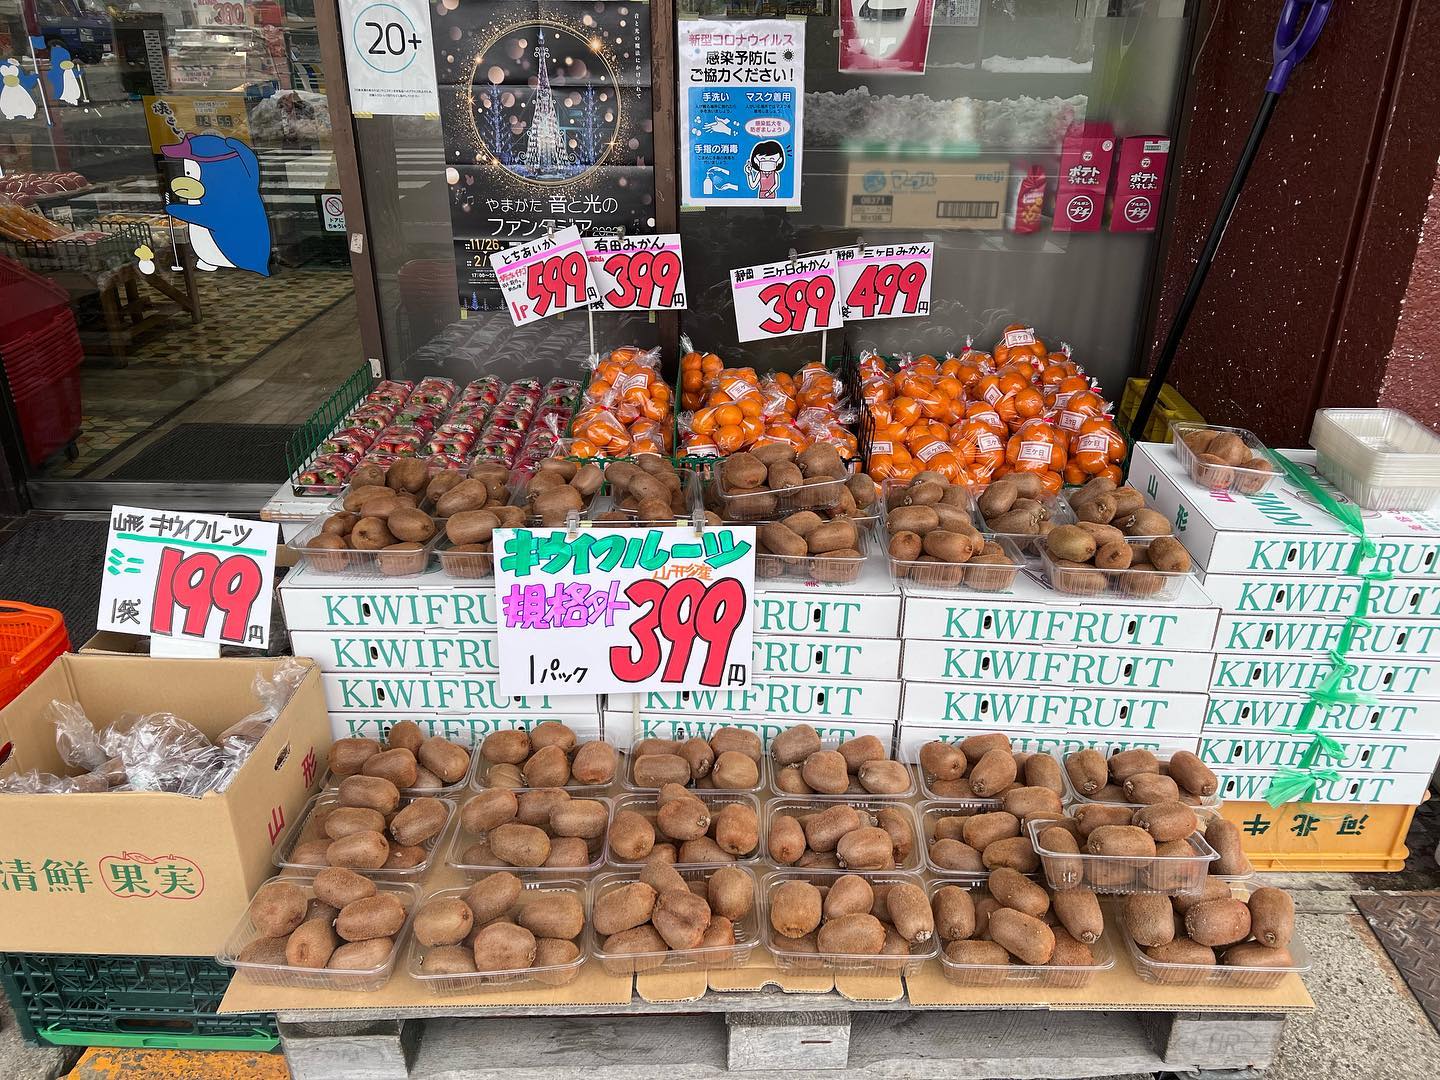 山形県産キウイフルーツ
規格外も食べてください。8個入り399円
超希少な『完熟️』三ヶ日みかんあります。
苺『とちあいか』
とちおとめの後継品種で、実が固くて日持ちよく甘くておいしい